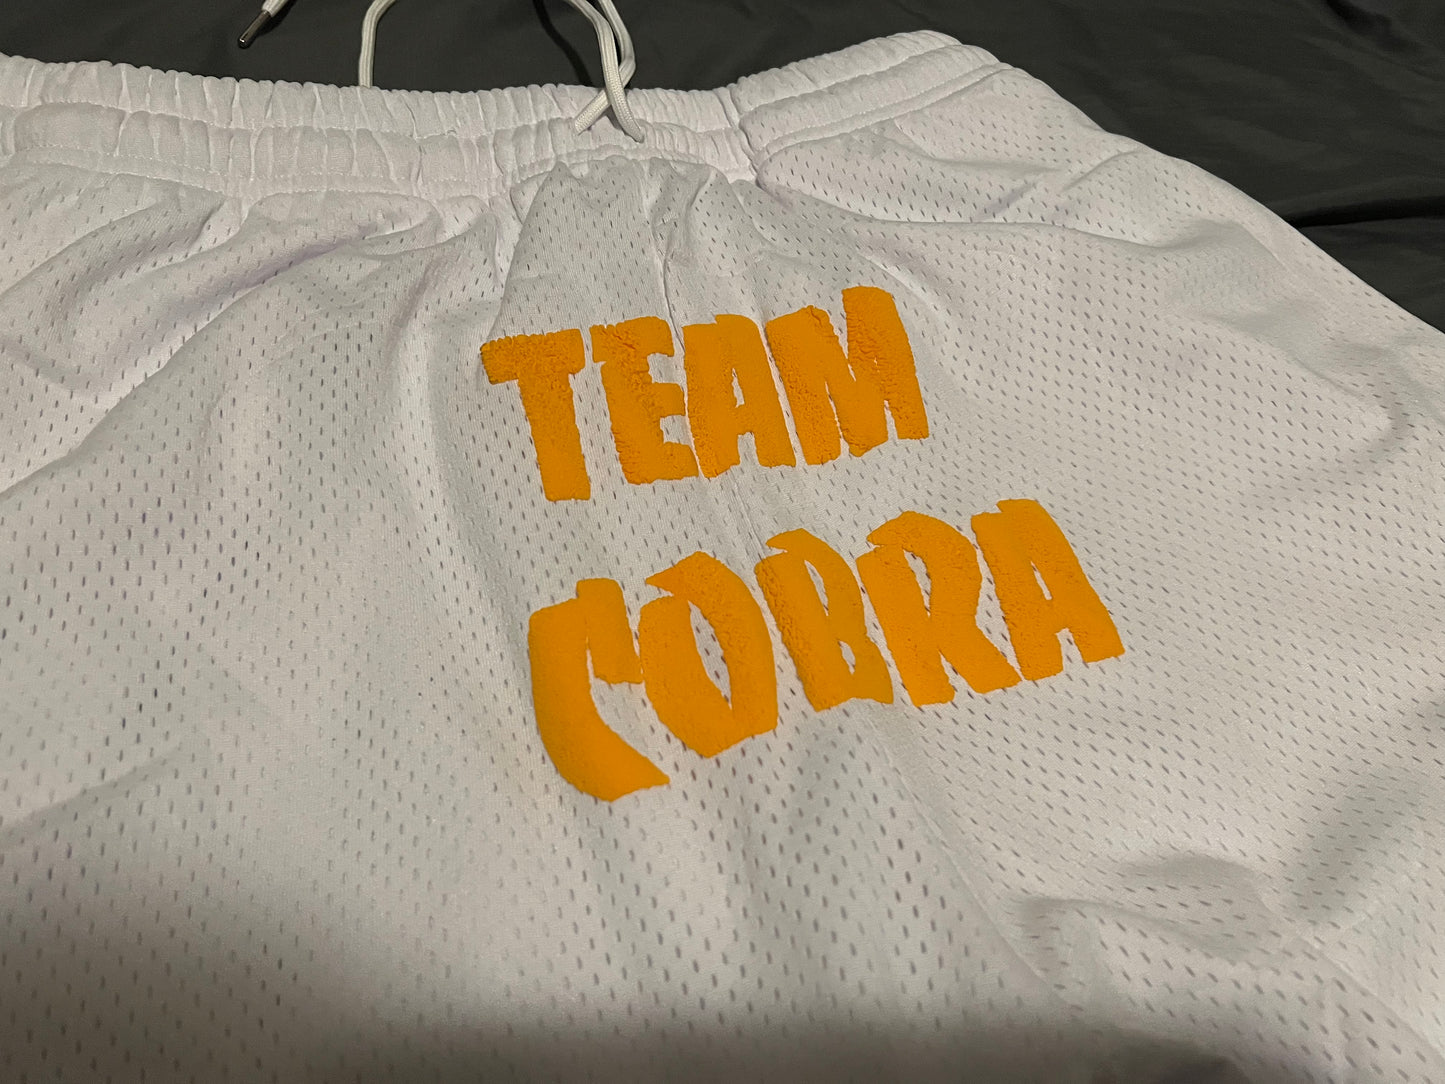 Team Cobra Shorts